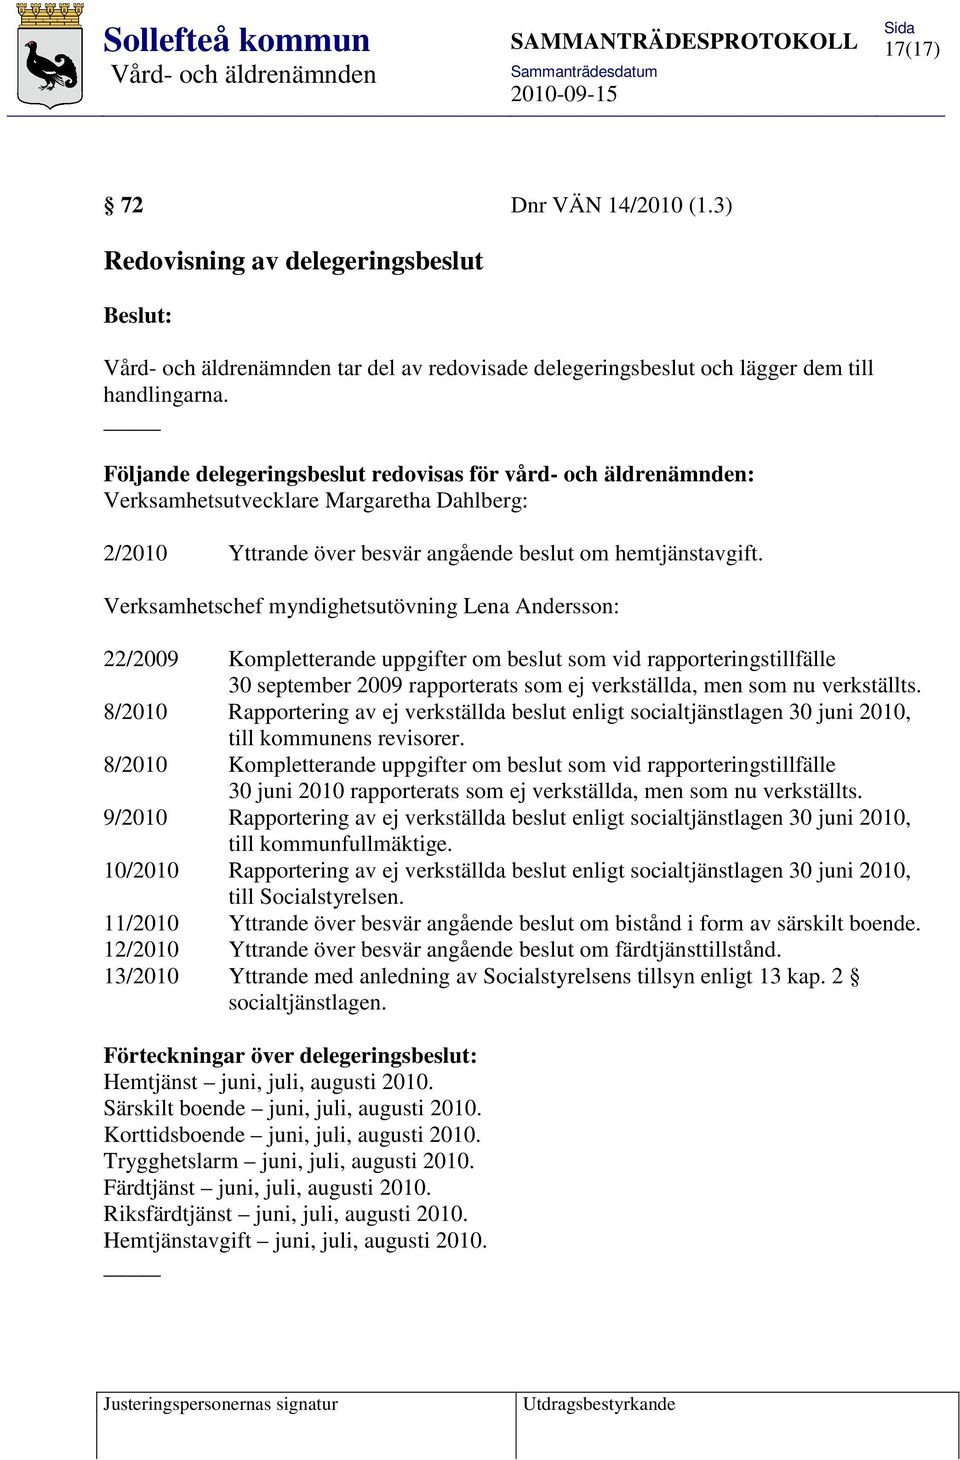 Verksamhetschef myndighetsutövning Lena Andersson: 22/2009 Kompletterande uppgifter om beslut som vid rapporteringstillfälle 30 september 2009 rapporterats som ej verkställda, men som nu verkställts.